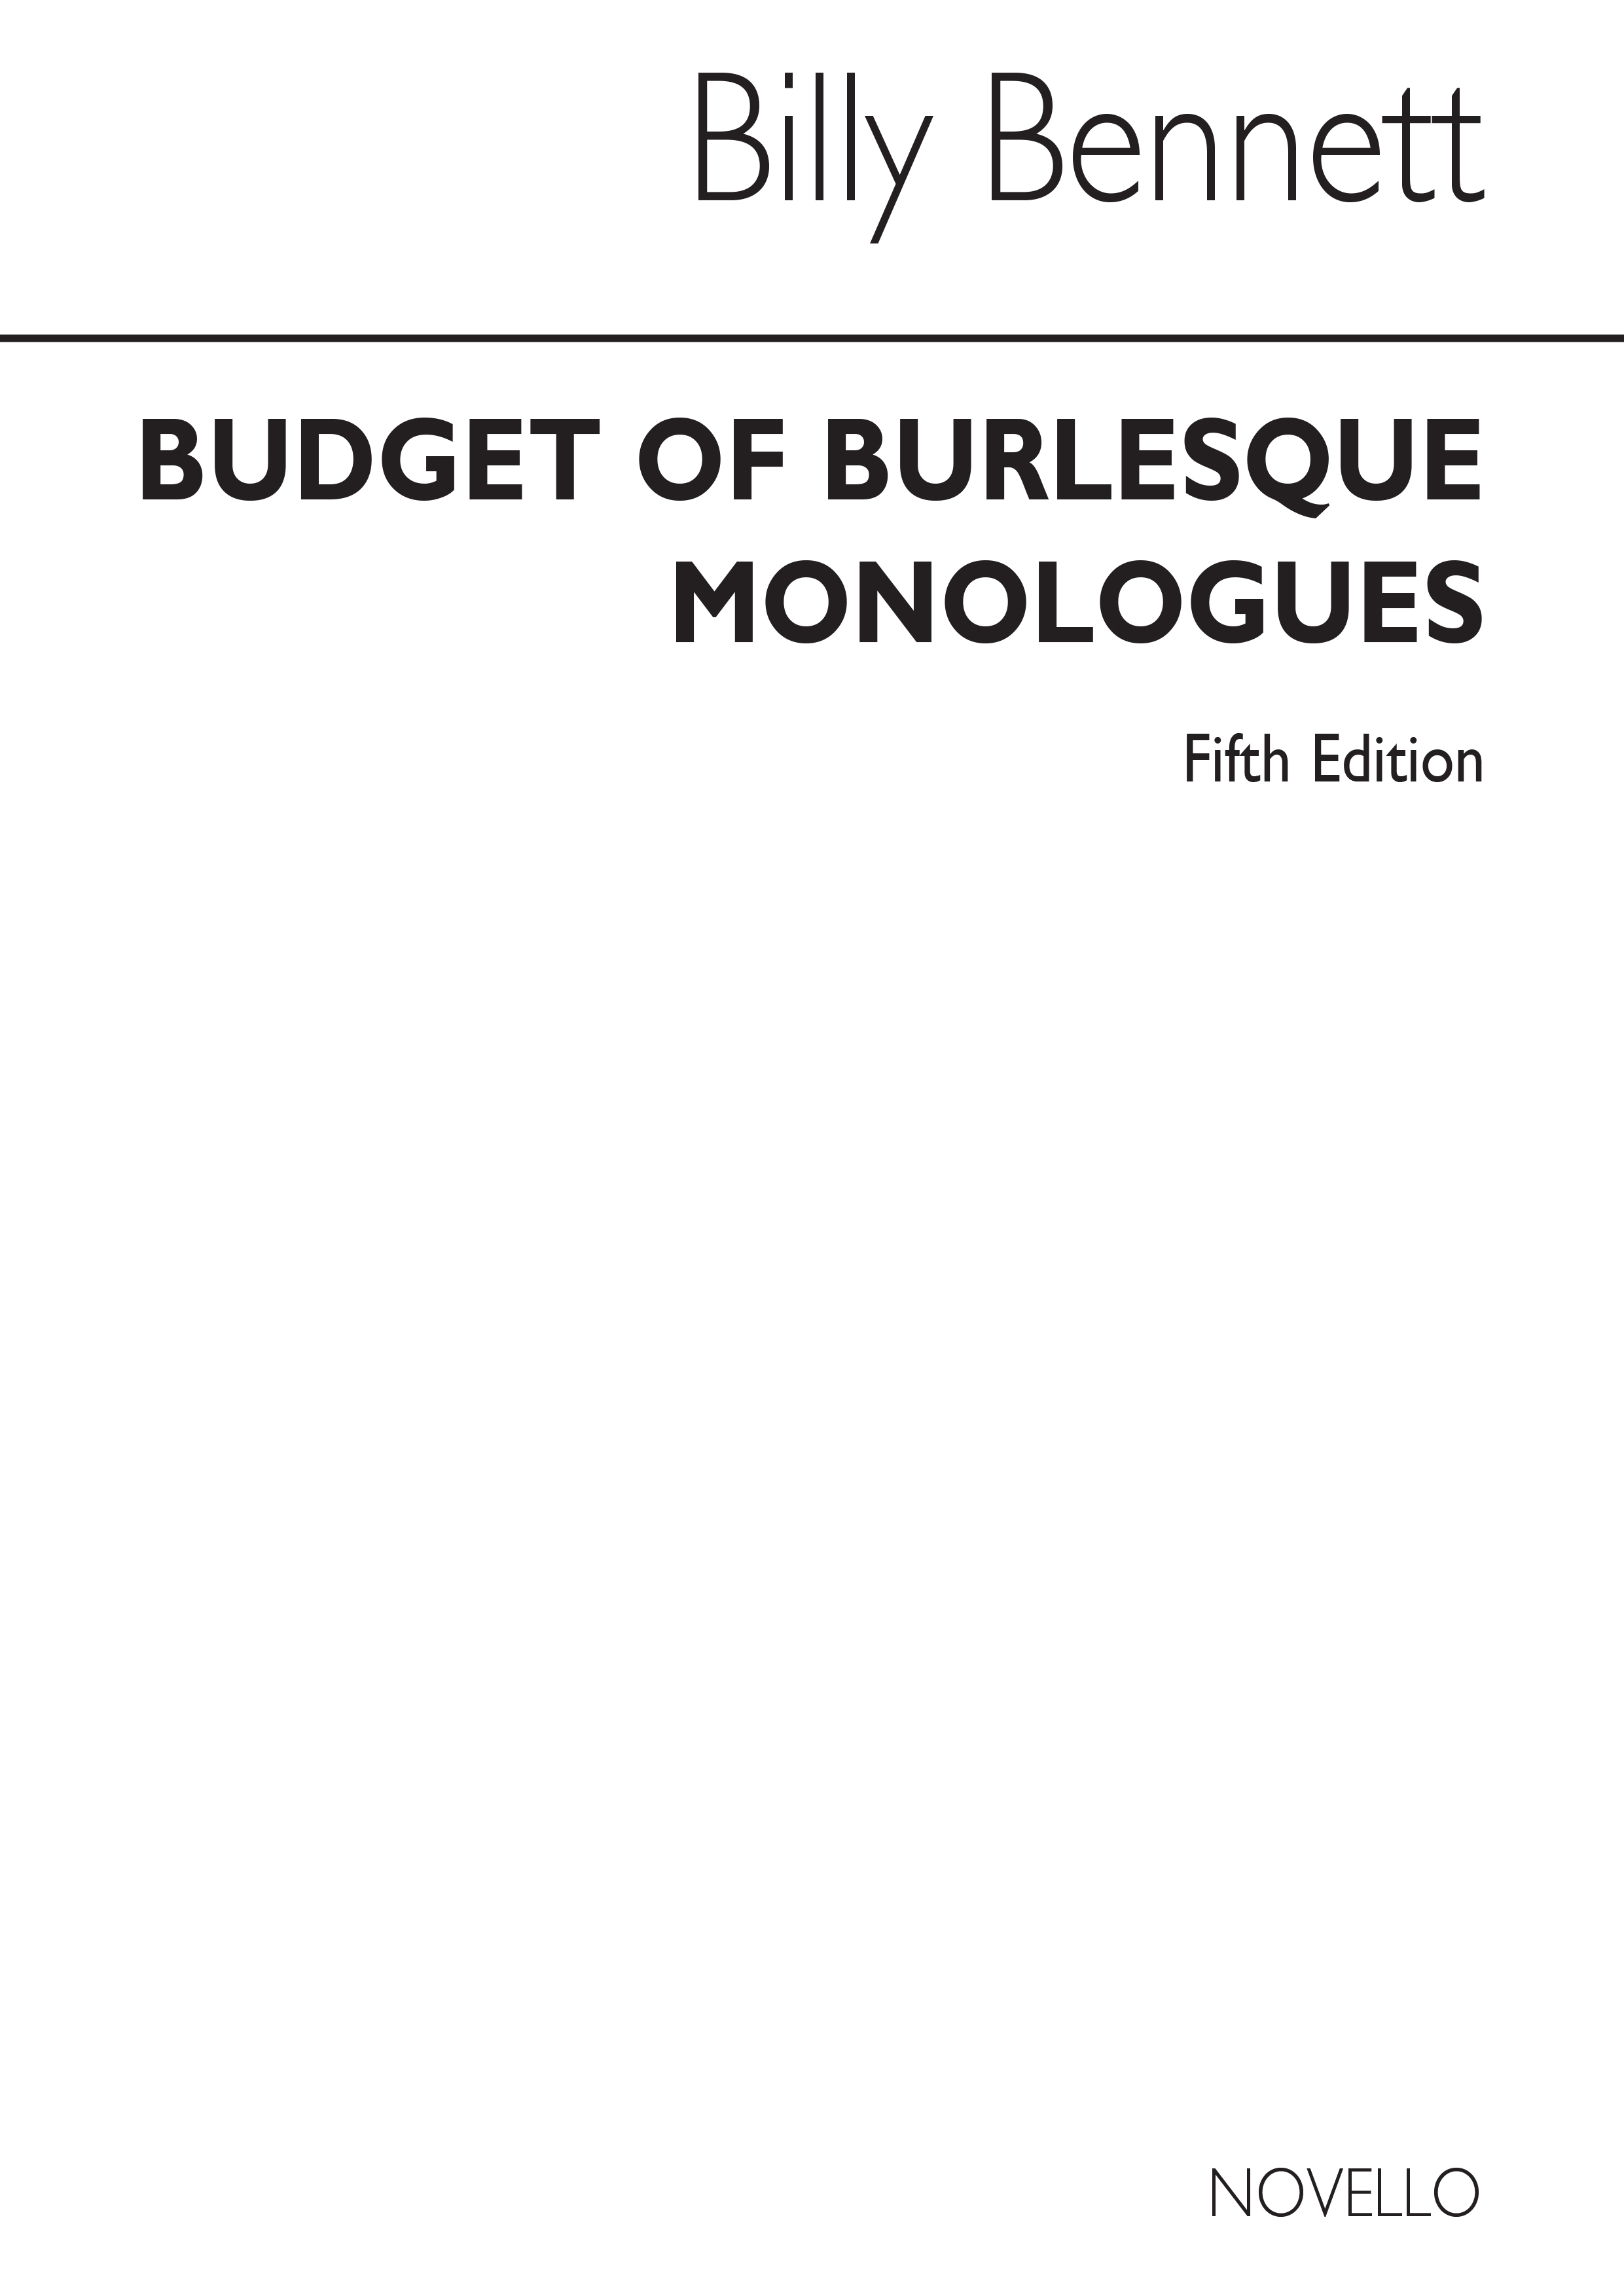 Billy Bennett: Fifth Budget Of Burlesque Monologue: Lyrics